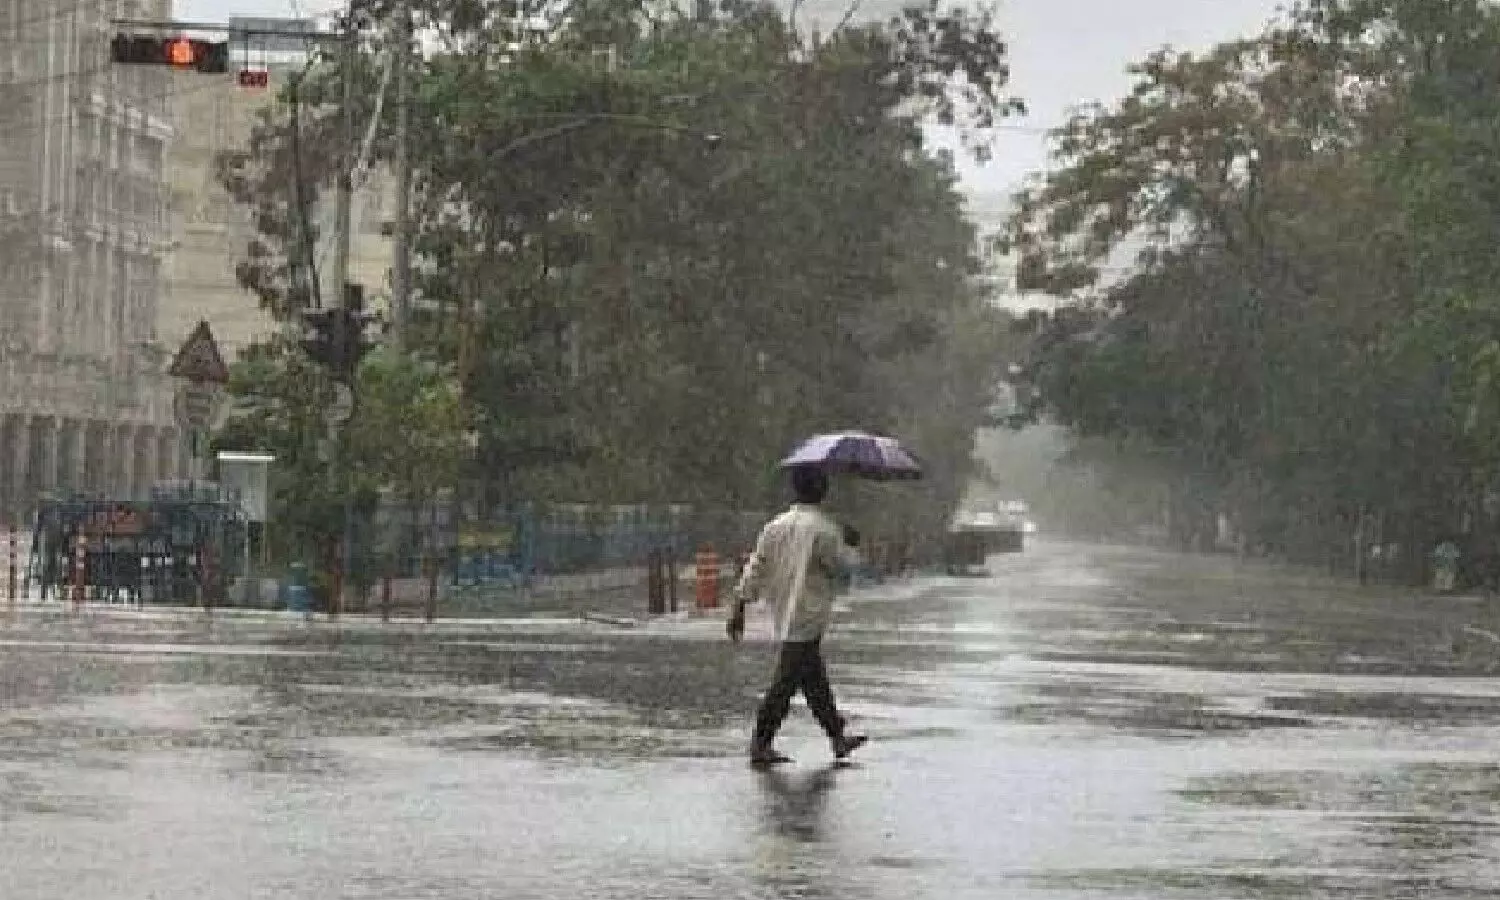 देश के कई भागों में अगले चार-पांच दिनों में बारिश हो सकती है जिससे लोगों को गर्मी से थोड़ी निजात मिलेगी.